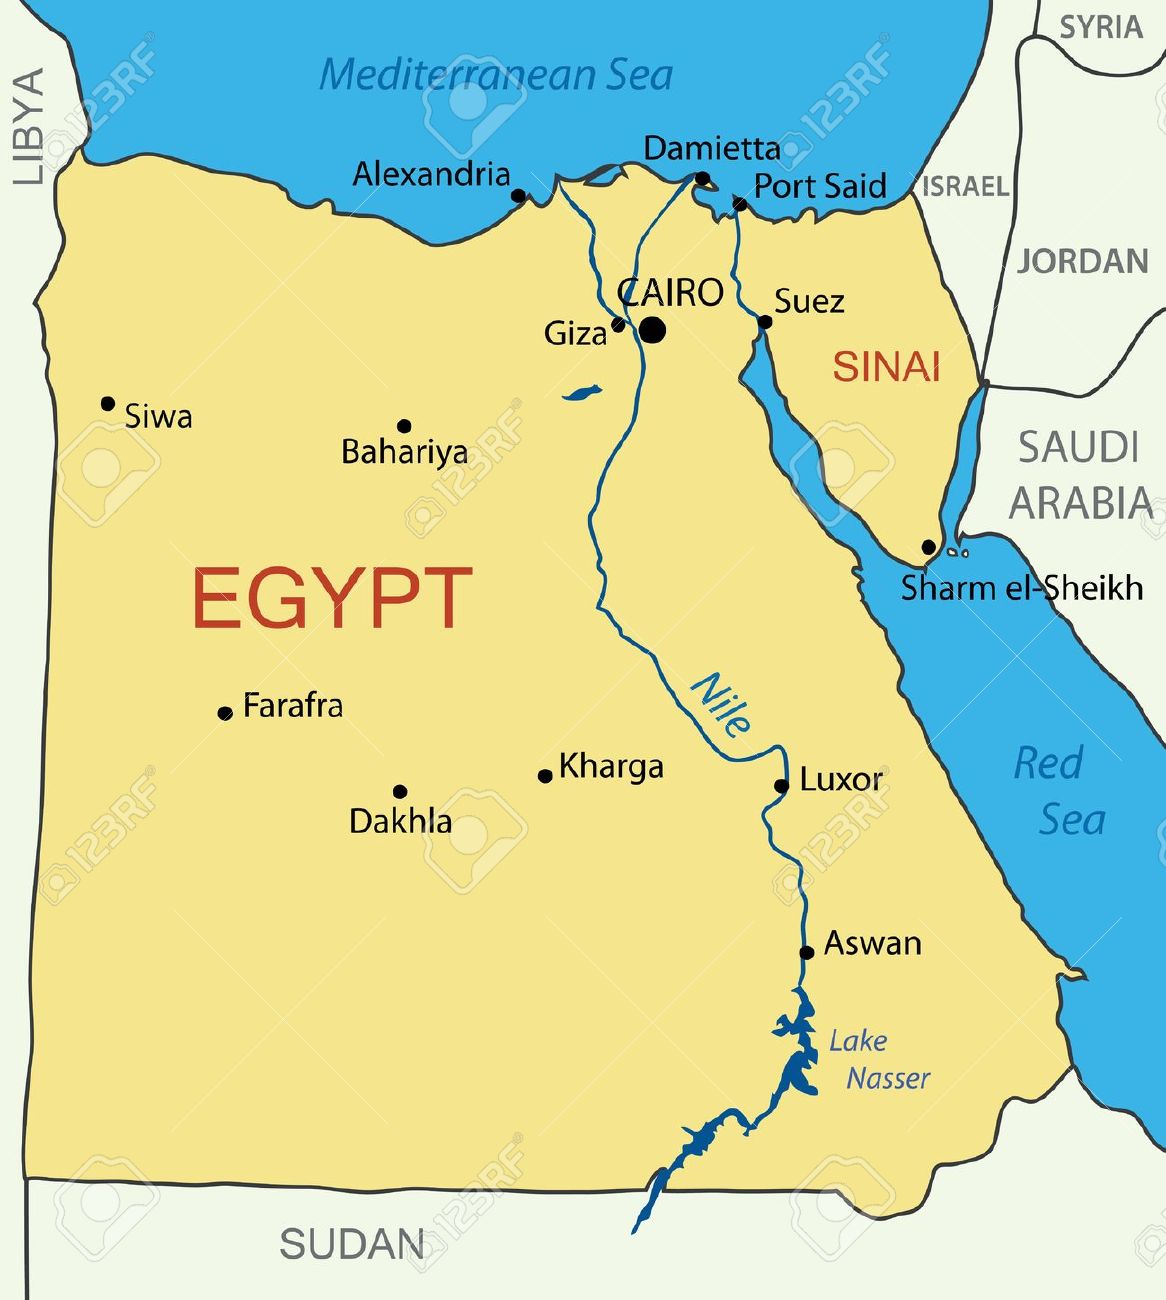 Viaje en El Cairo, Crucero por el Nilo y Hurgada.